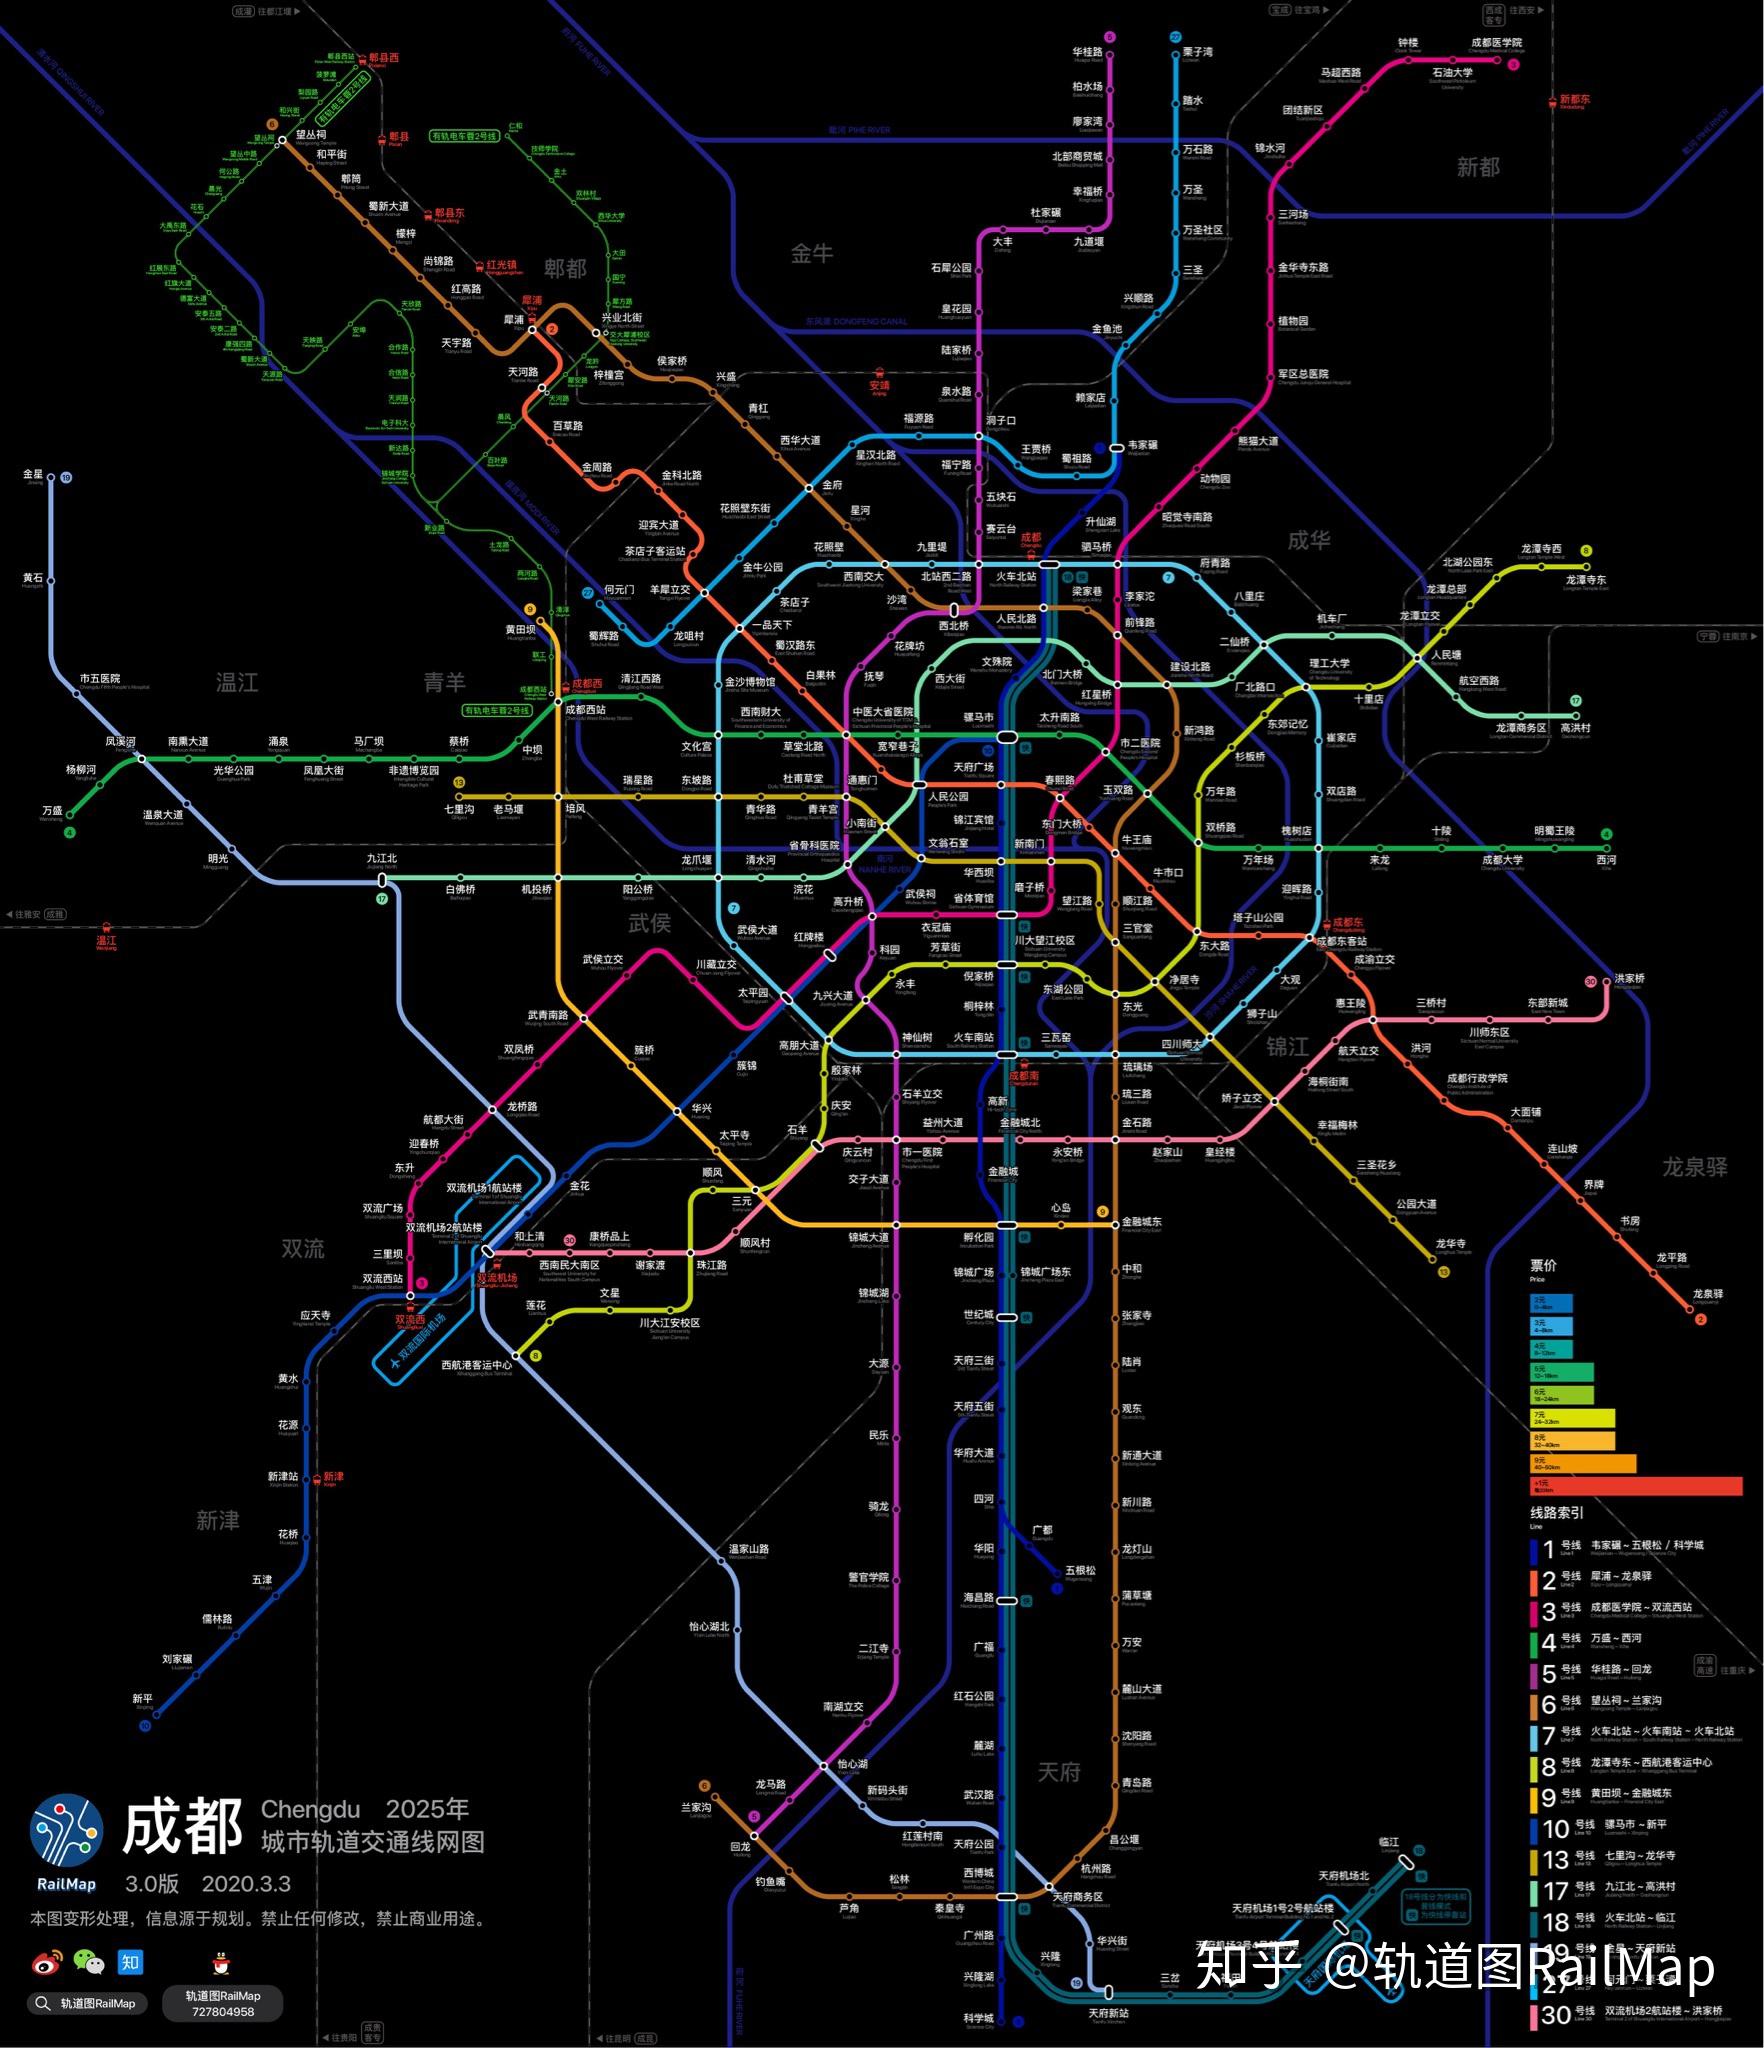 【轨道图railmap】成都地铁线网图2025年/当前 